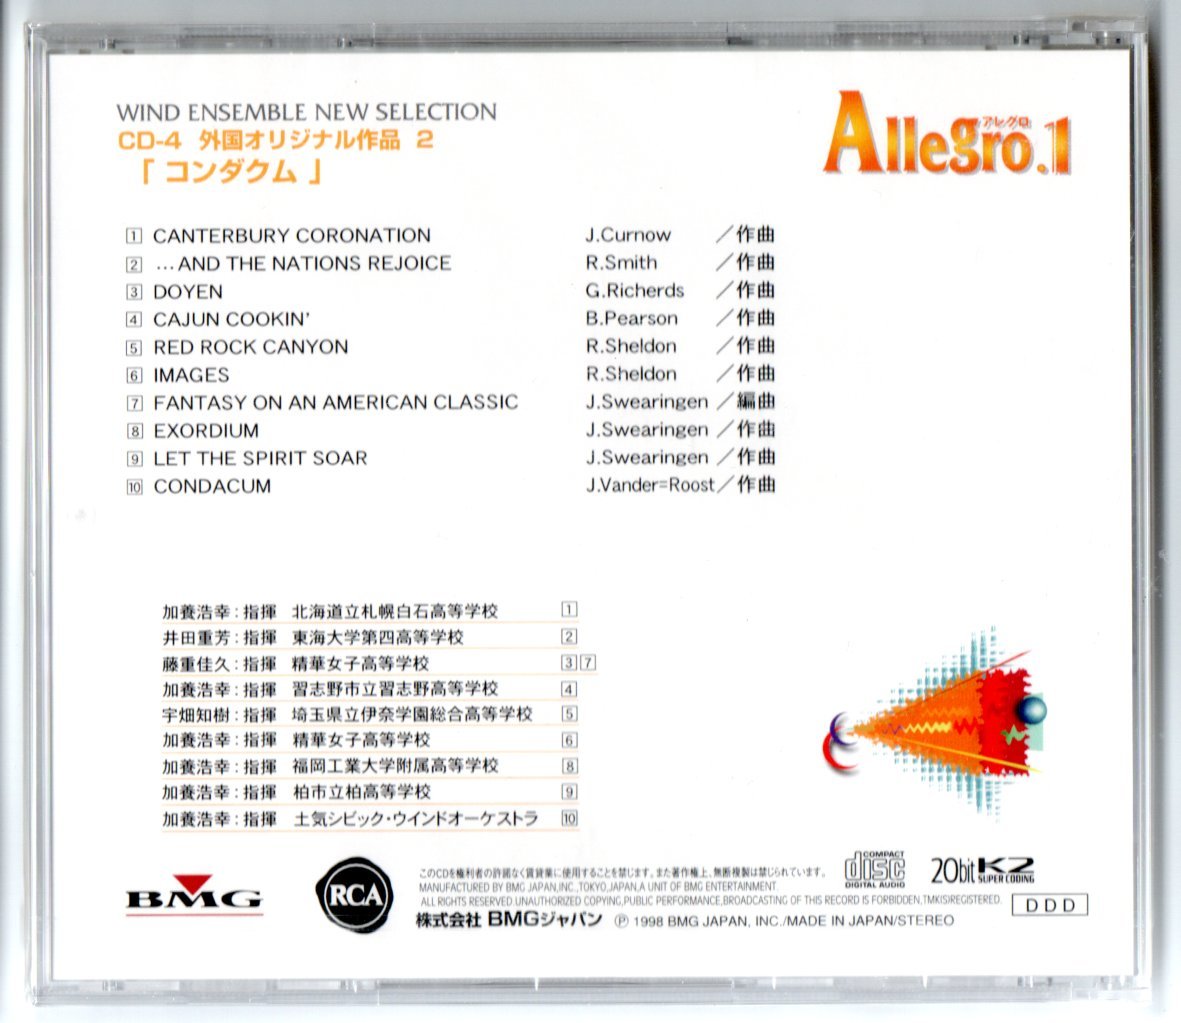 送料無料 吹奏楽 アレグロ1 CD-4 外国オリジナル作品2 コンダクム レッド・ロック・キャニオン ドーエン イメージズ 魂よ天高く舞い上がれ_画像2